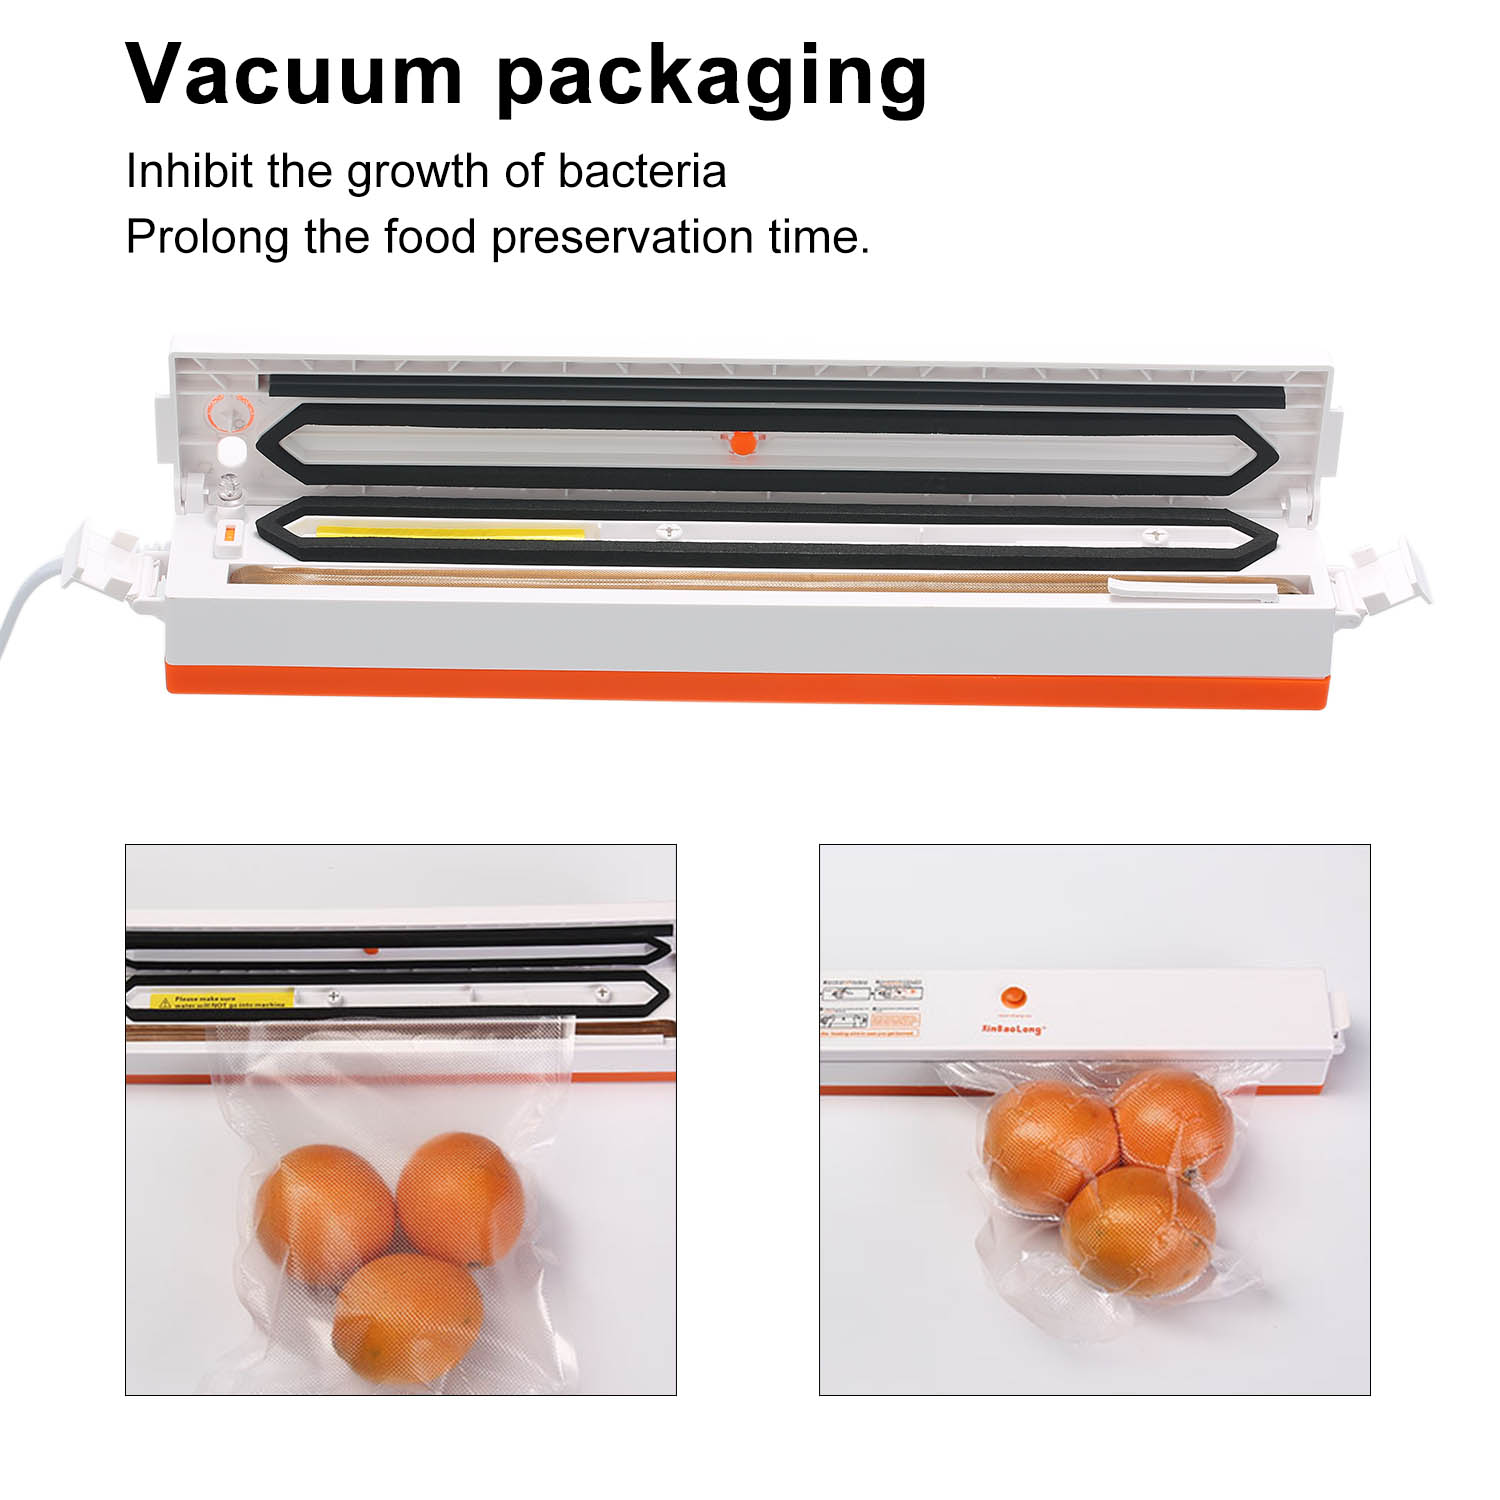 Vacuum Sealer Packaging Machine 220V/110V Household Food Vacuum Sealer Film Sealer Vacuum Packer with 15Pcs Bags